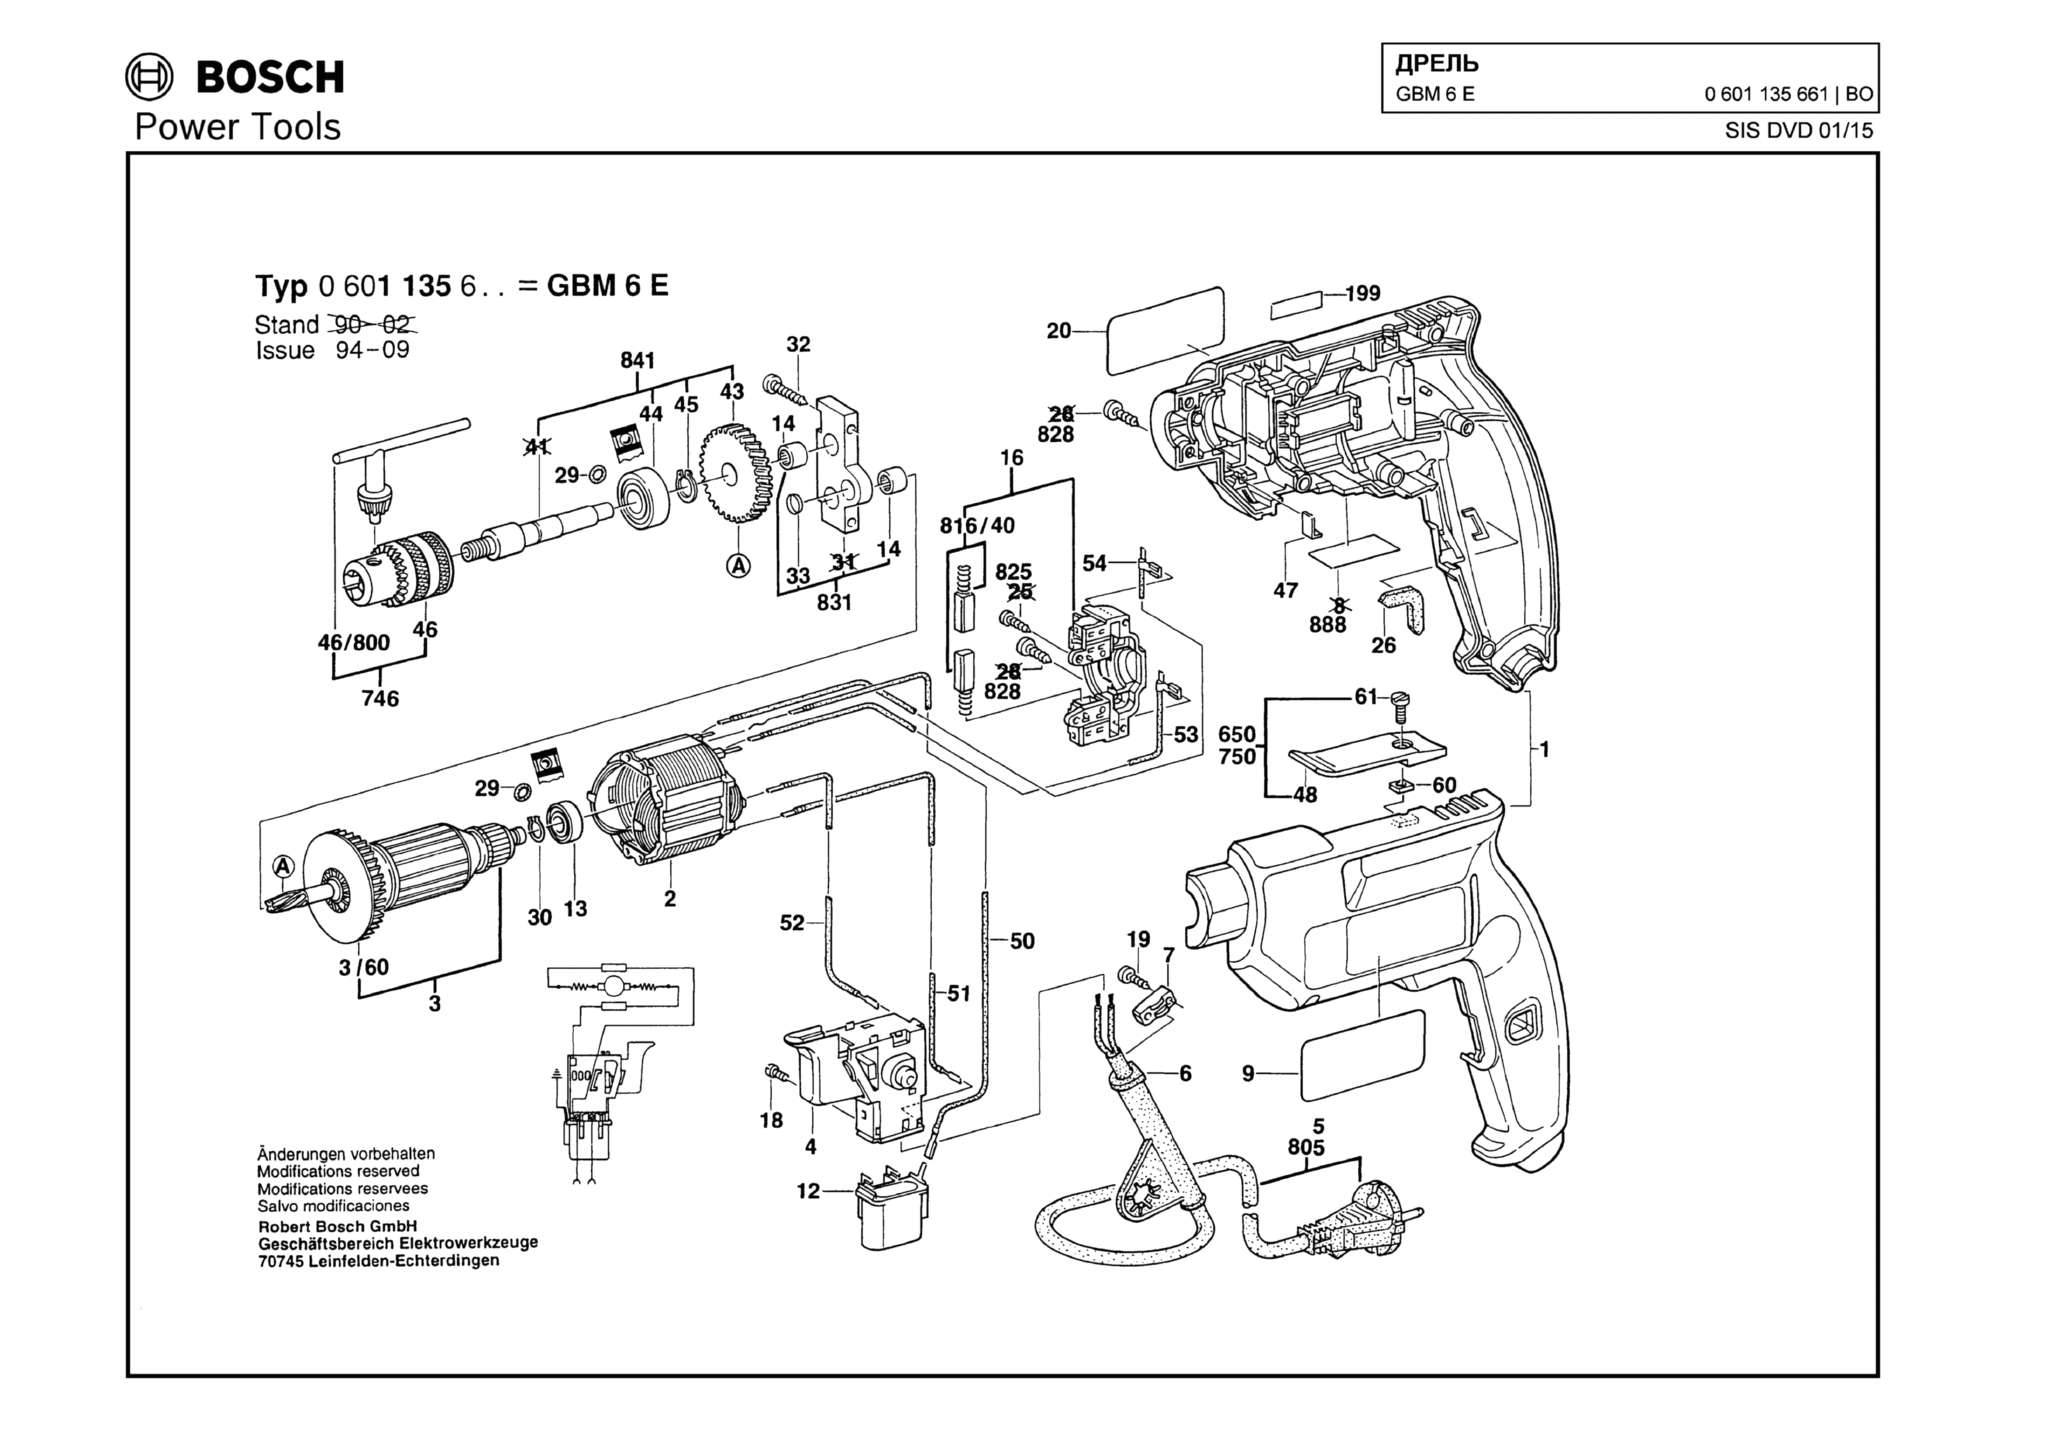 Запчасти, схема и деталировка Bosch GBM 6 E (ТИП 0601135661)